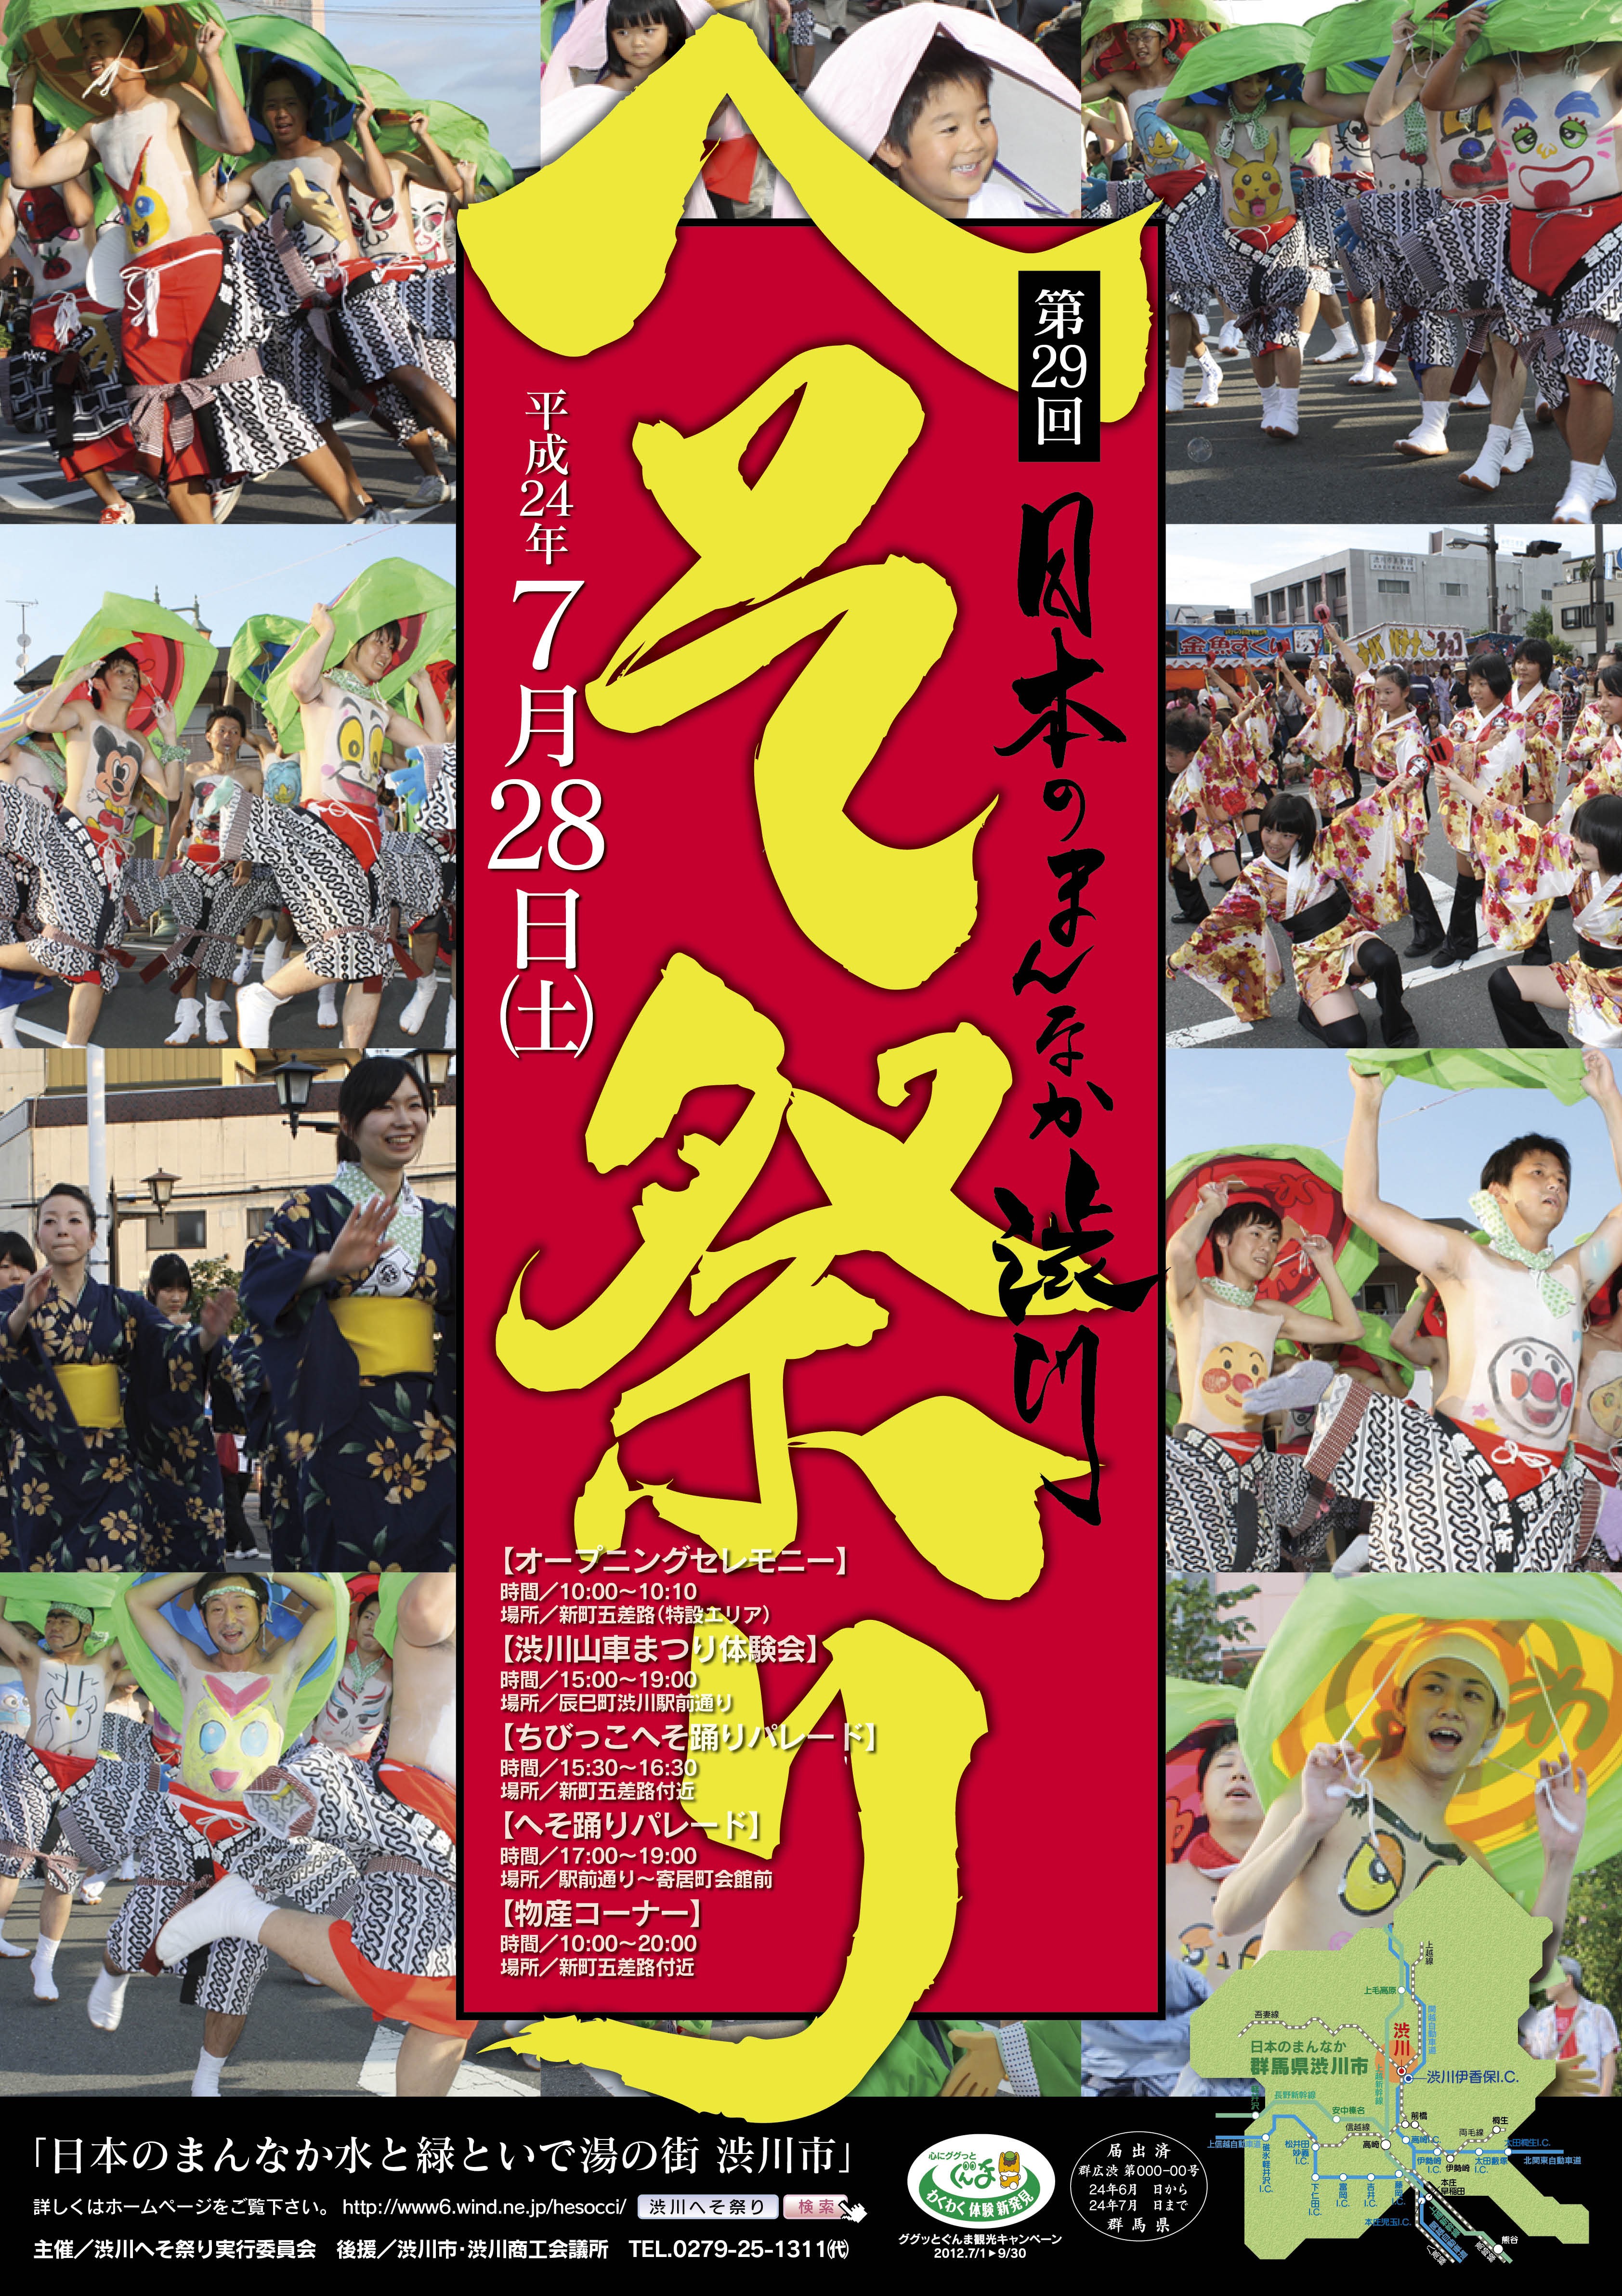 第29回 日本のまんなか渋川へそ祭り 伊香保温泉 周辺のお知らせ